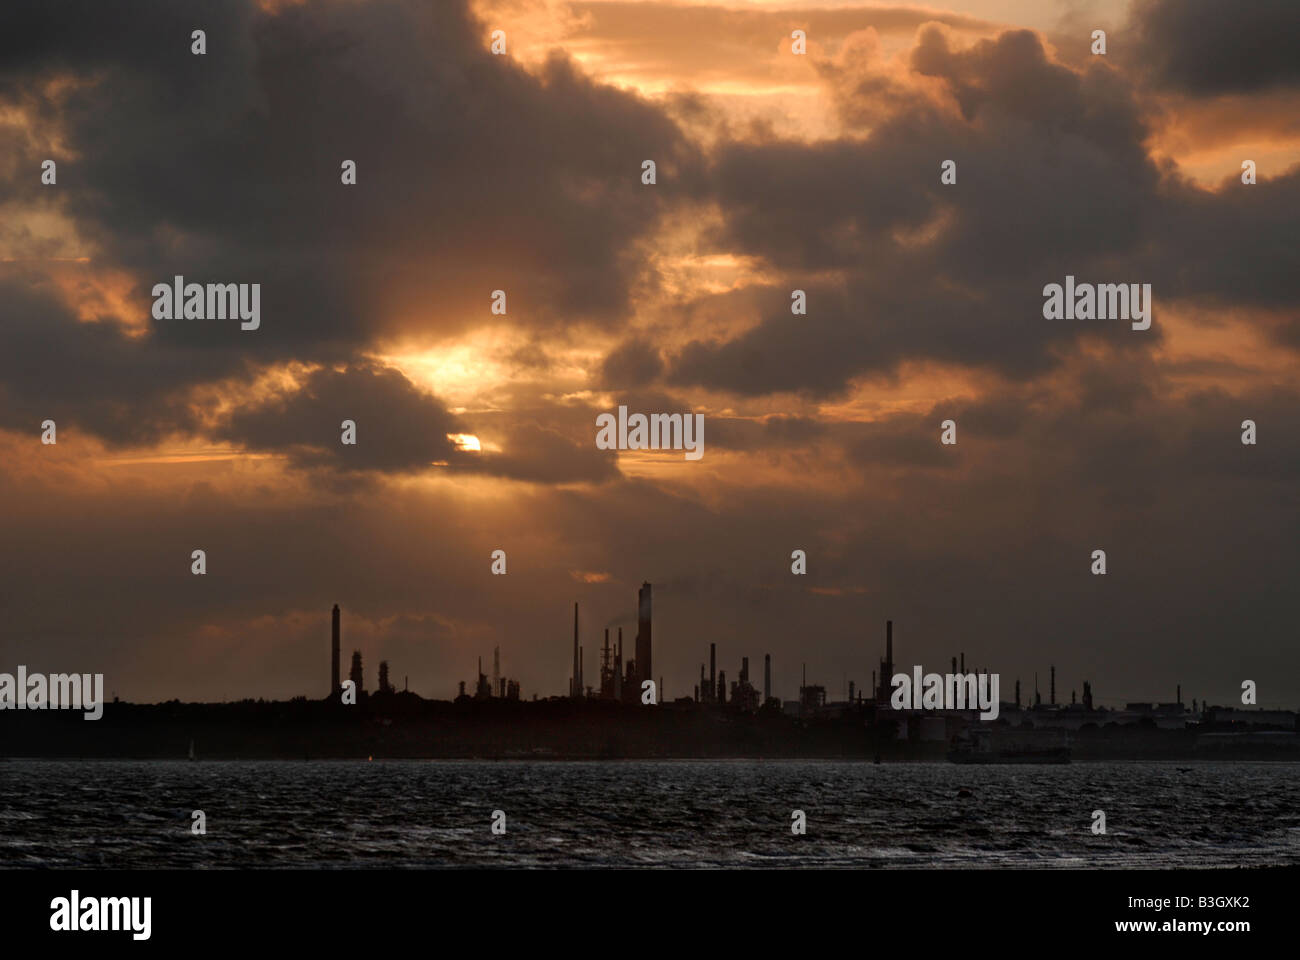 Le soleil se couche sur la raffinerie de pétrole de Fawley, Hampshire, Angleterre Banque D'Images